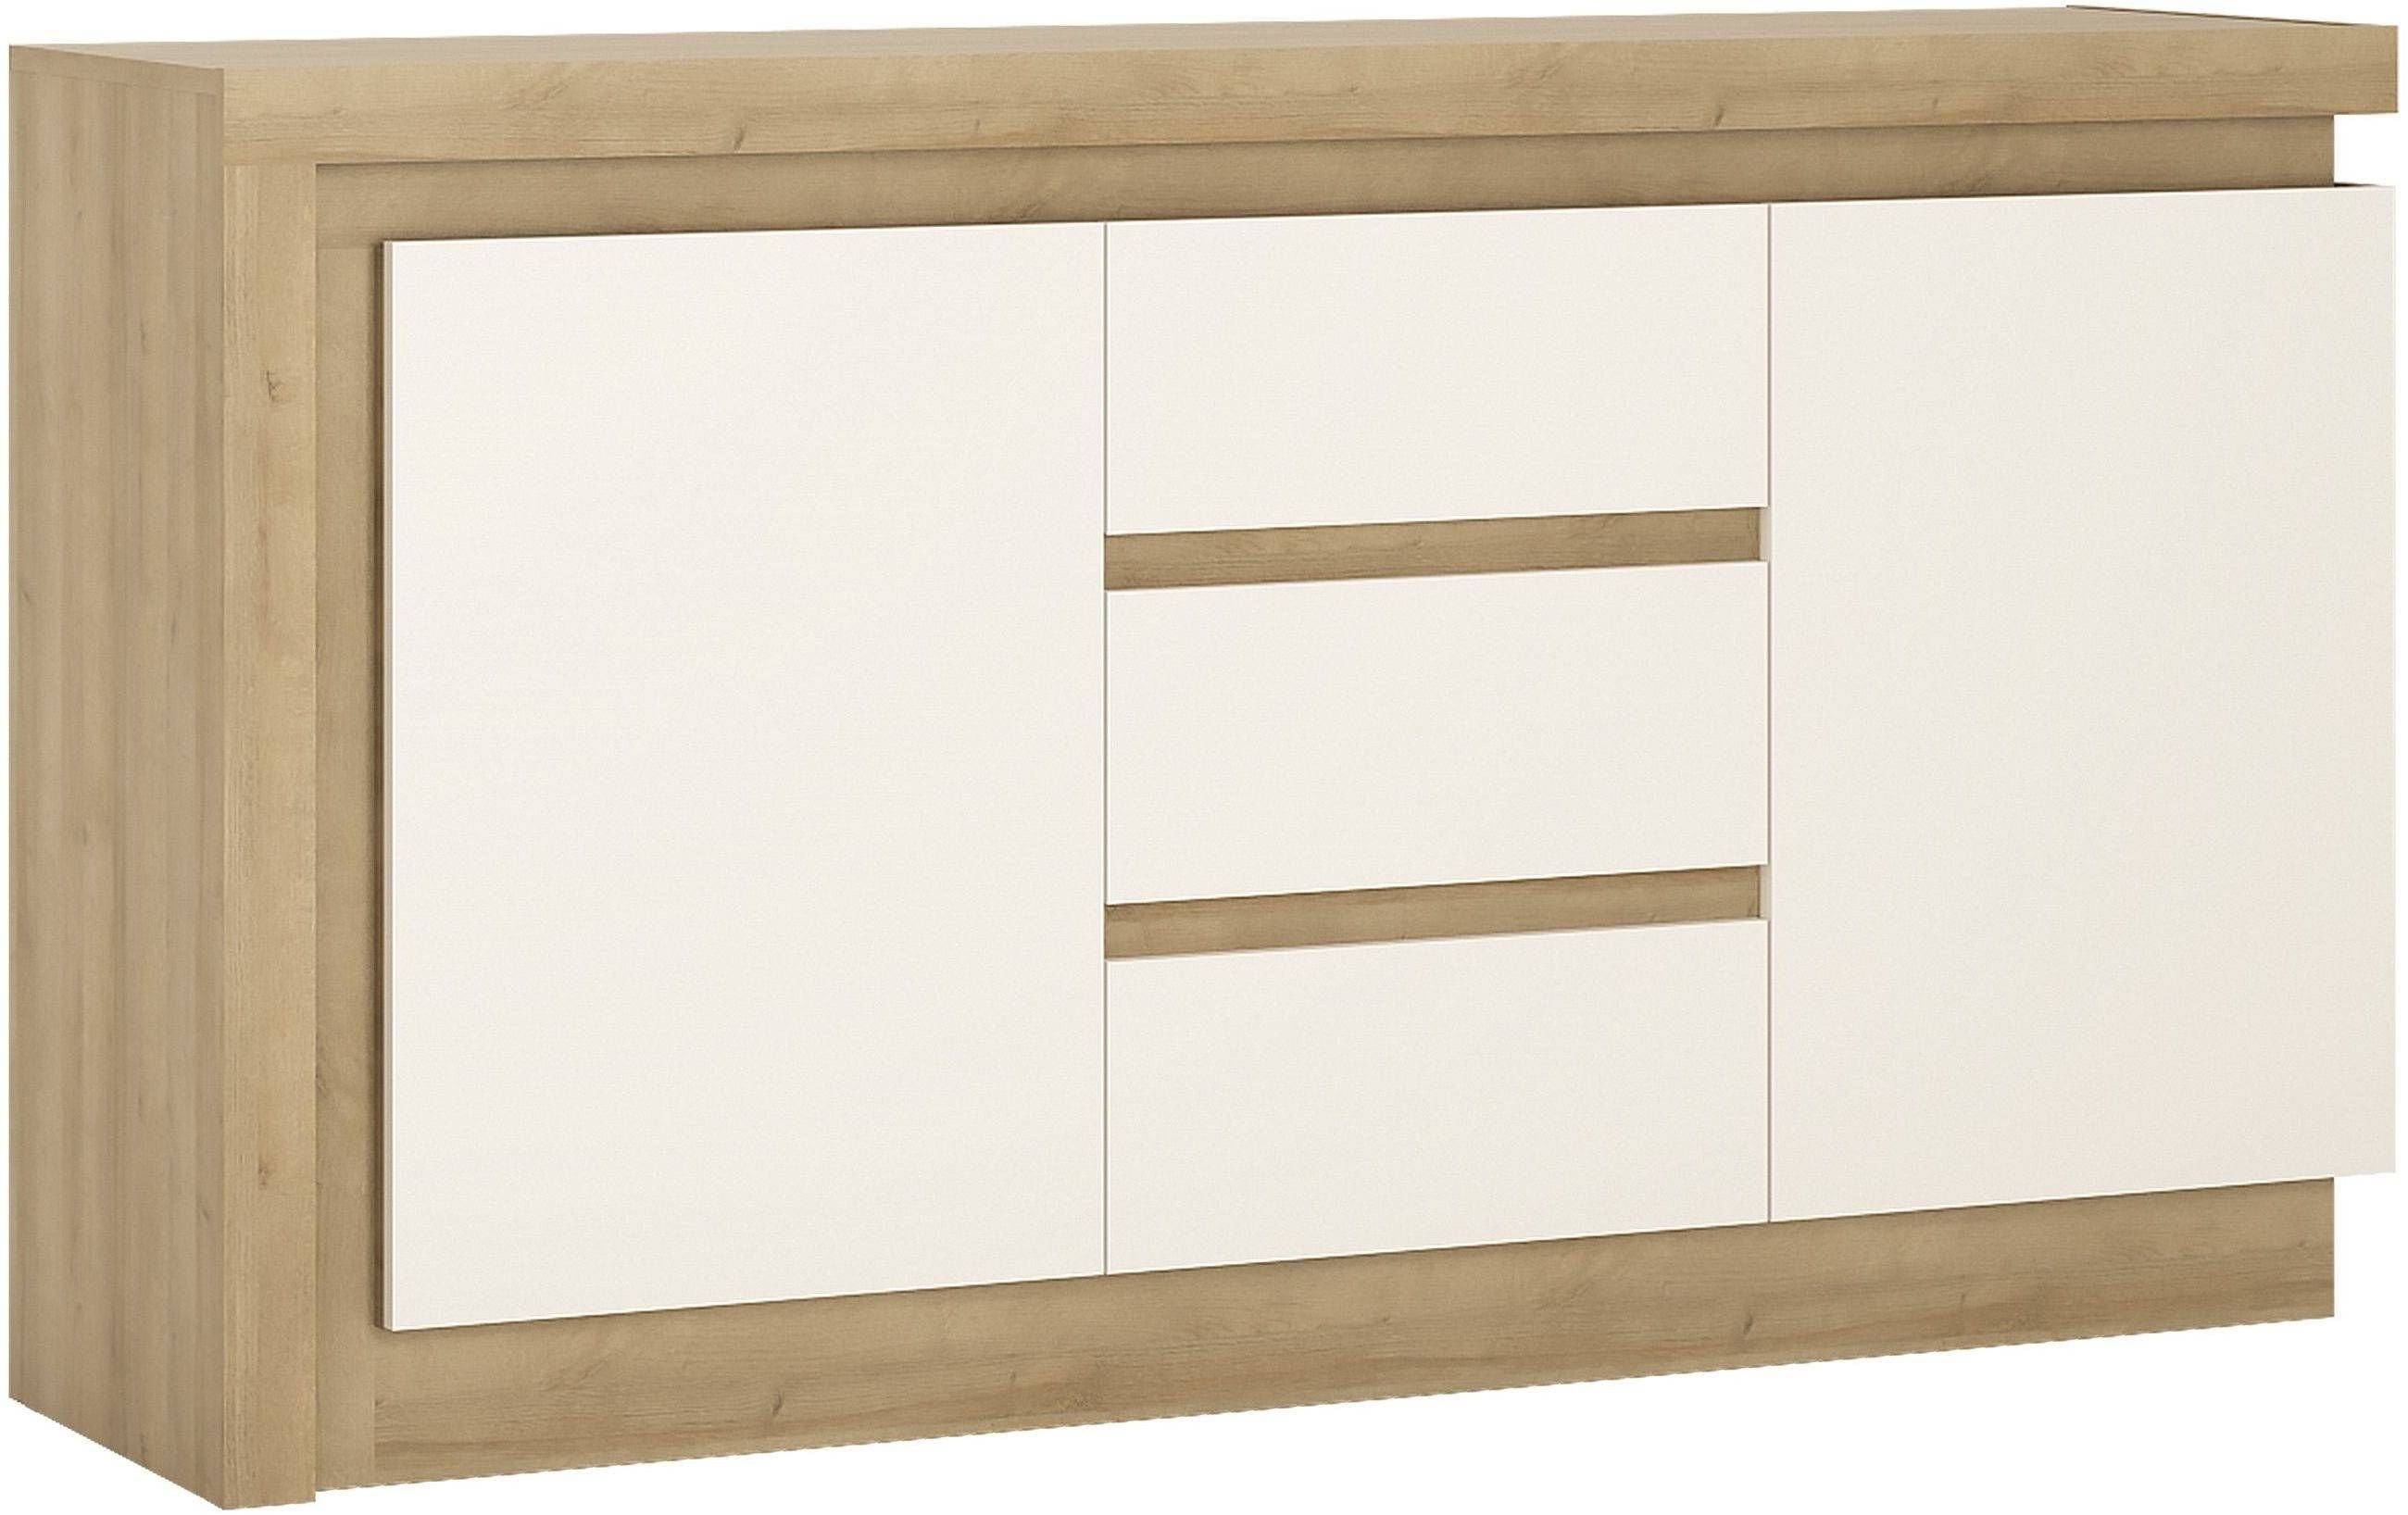 Buy Lyon Riviera Oak And White High Gloss Sideboard – 2 Door 3 Regarding Cheap White High Gloss Sideboard (Photo 20 of 20)